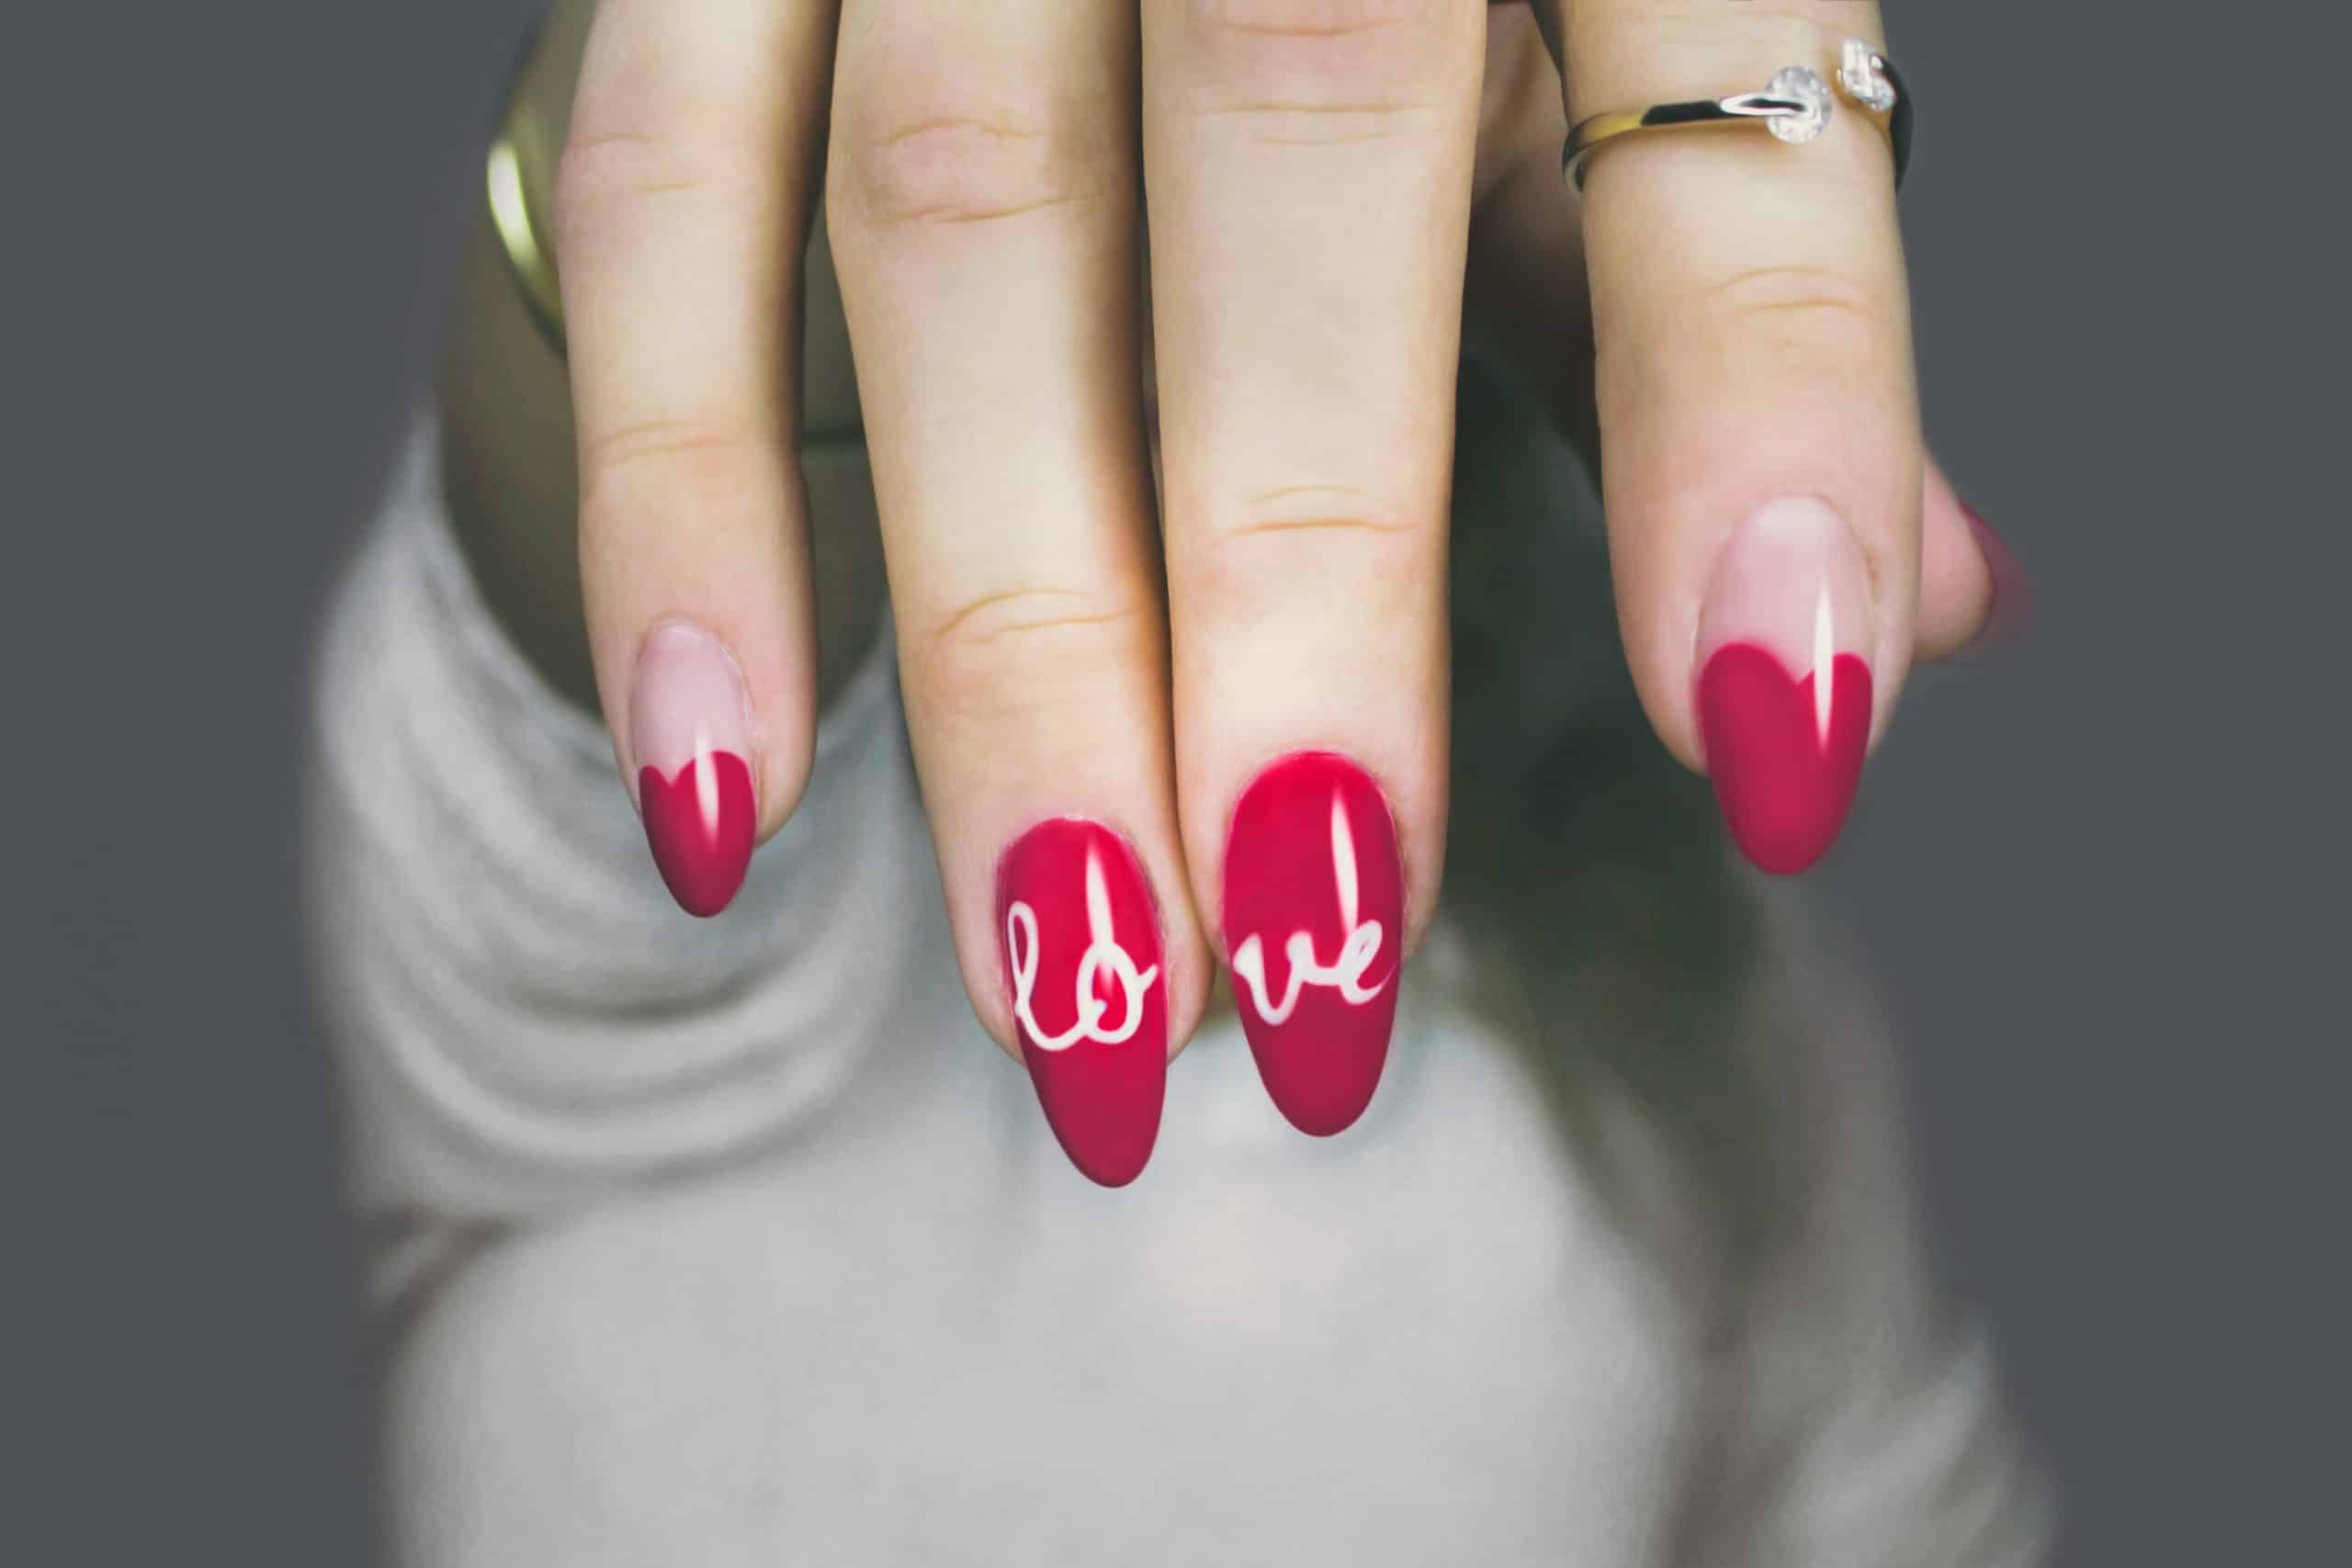 umjetni nokti crvene boje s natpisom "love"